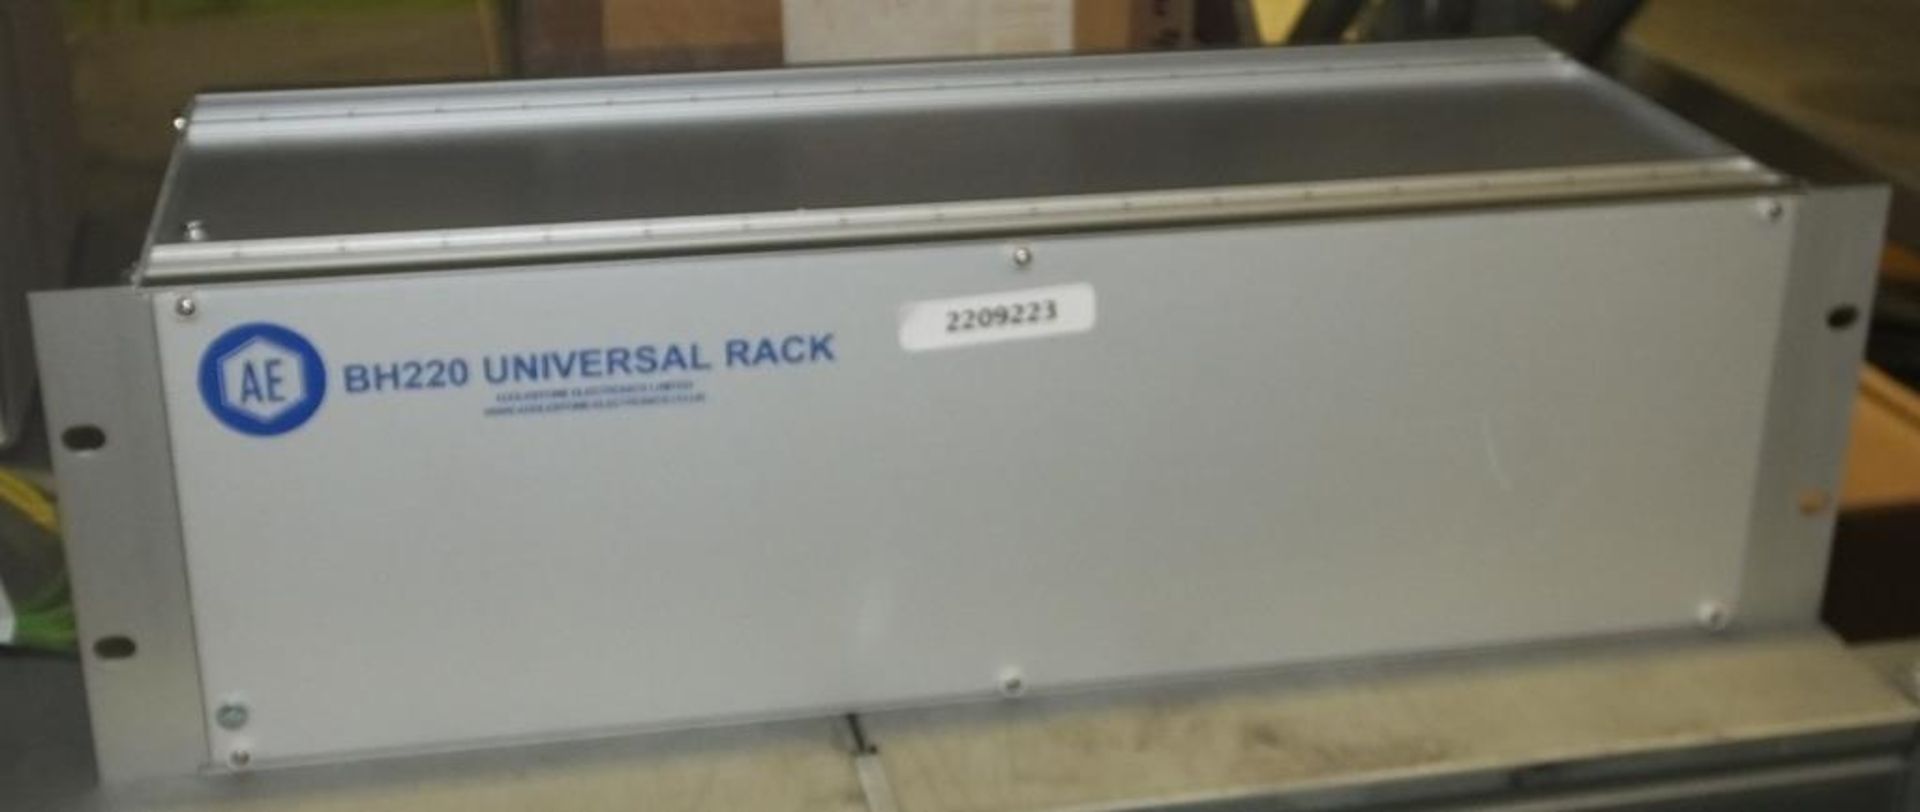 BBV Tx1500 Keypad, AE BH 220 Universal Rack - Image 4 of 4